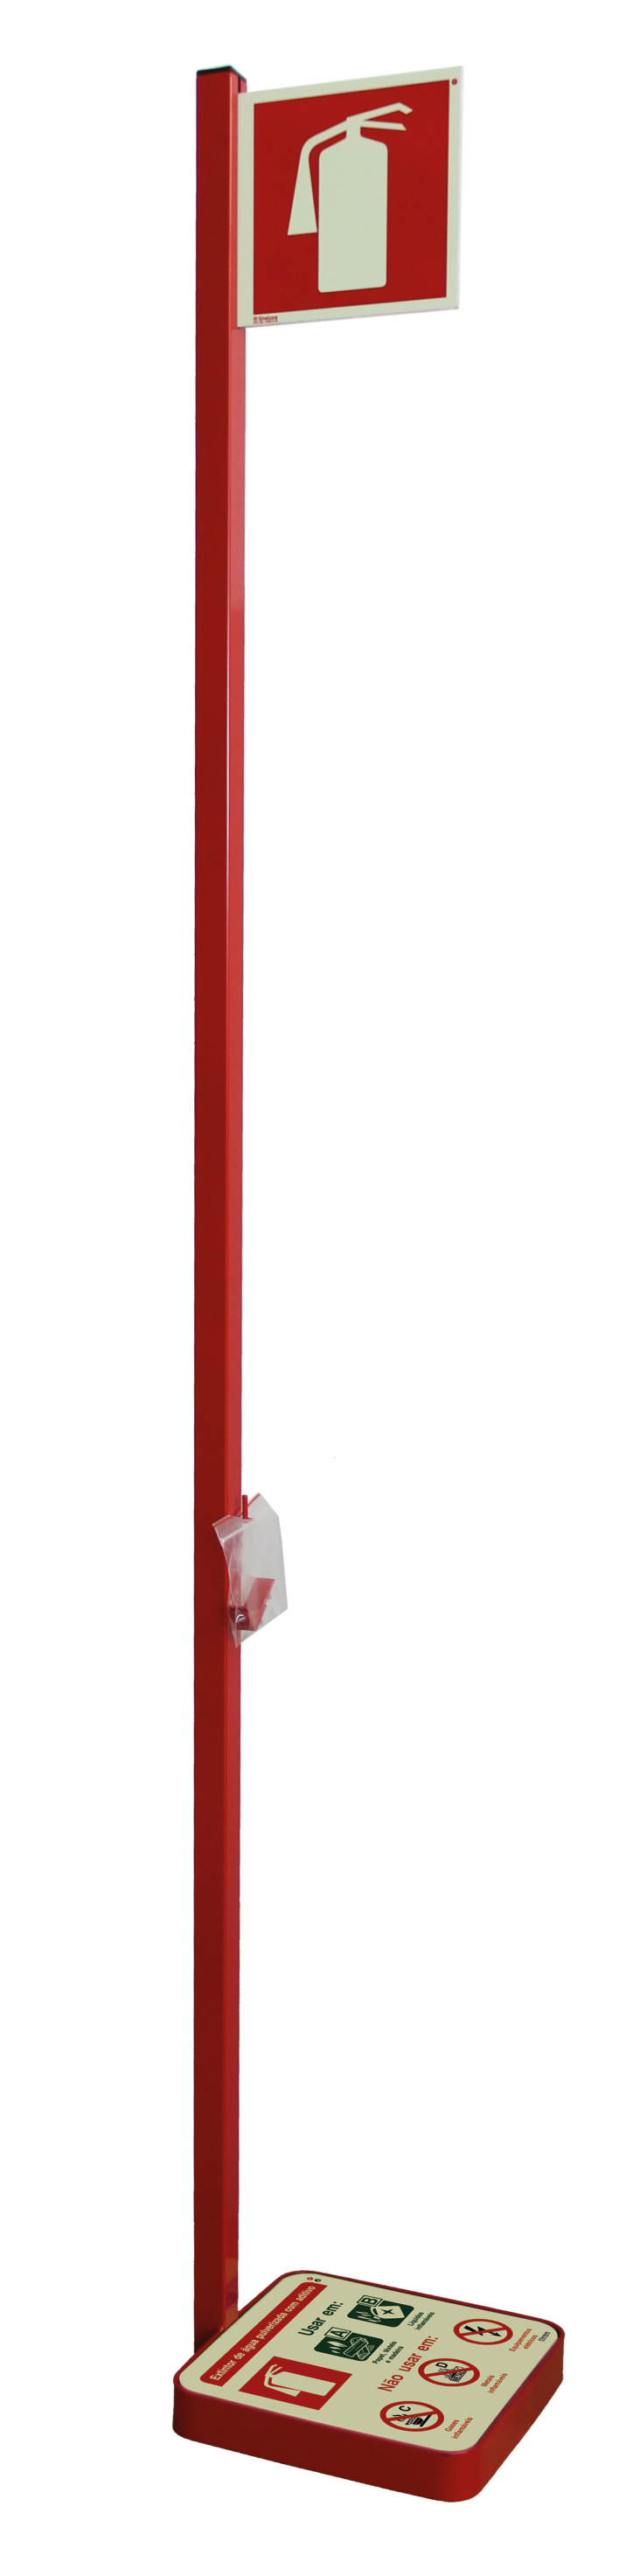 Posicionador vermelho para extintores de água com aditivo